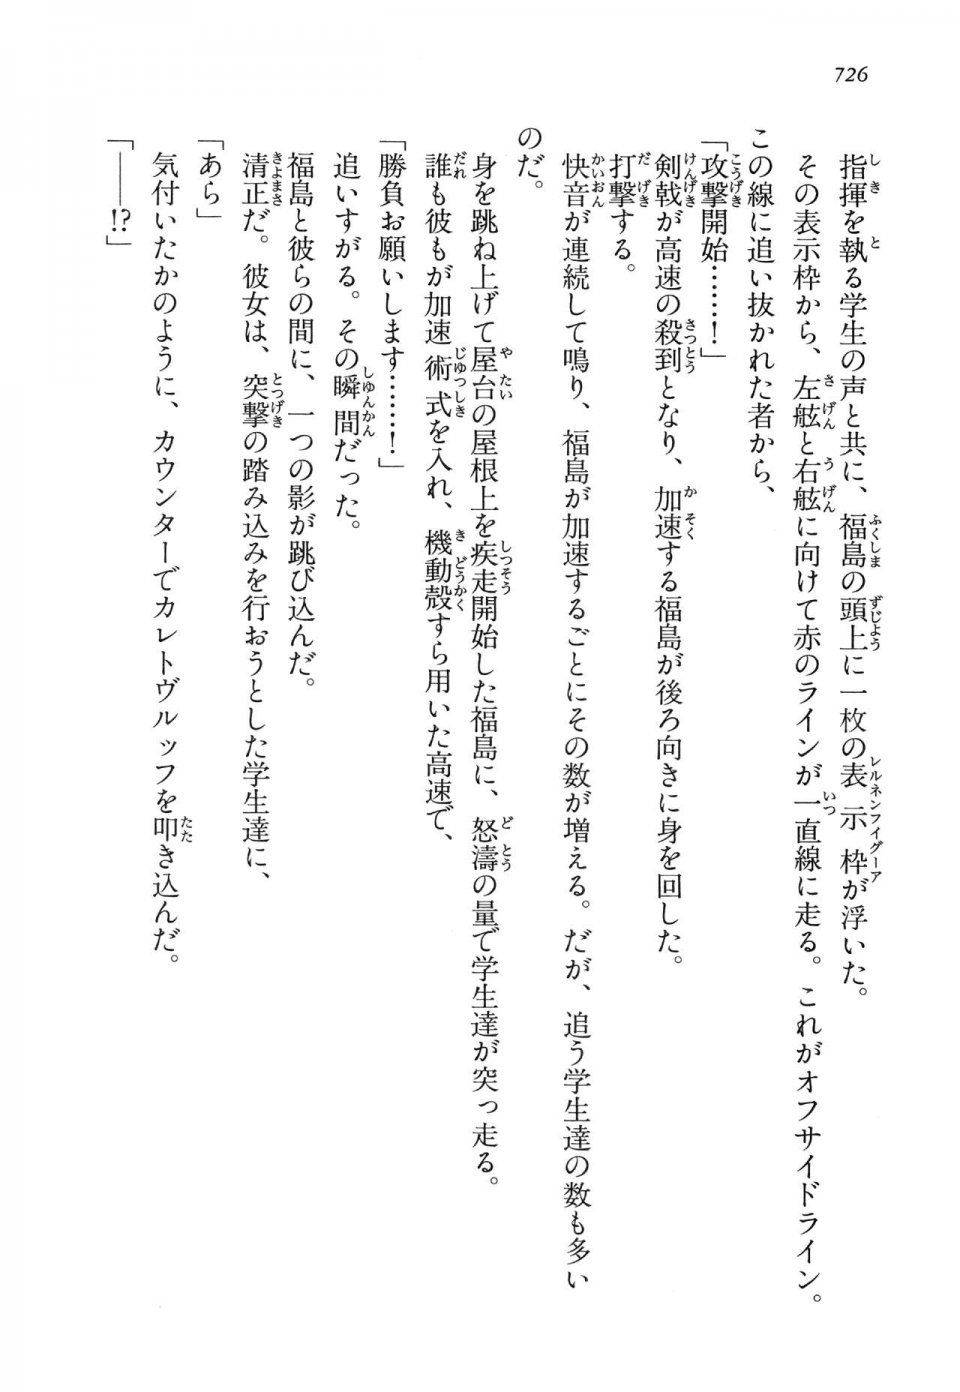 Kyoukai Senjou no Horizon LN Vol 14(6B) - Photo #726